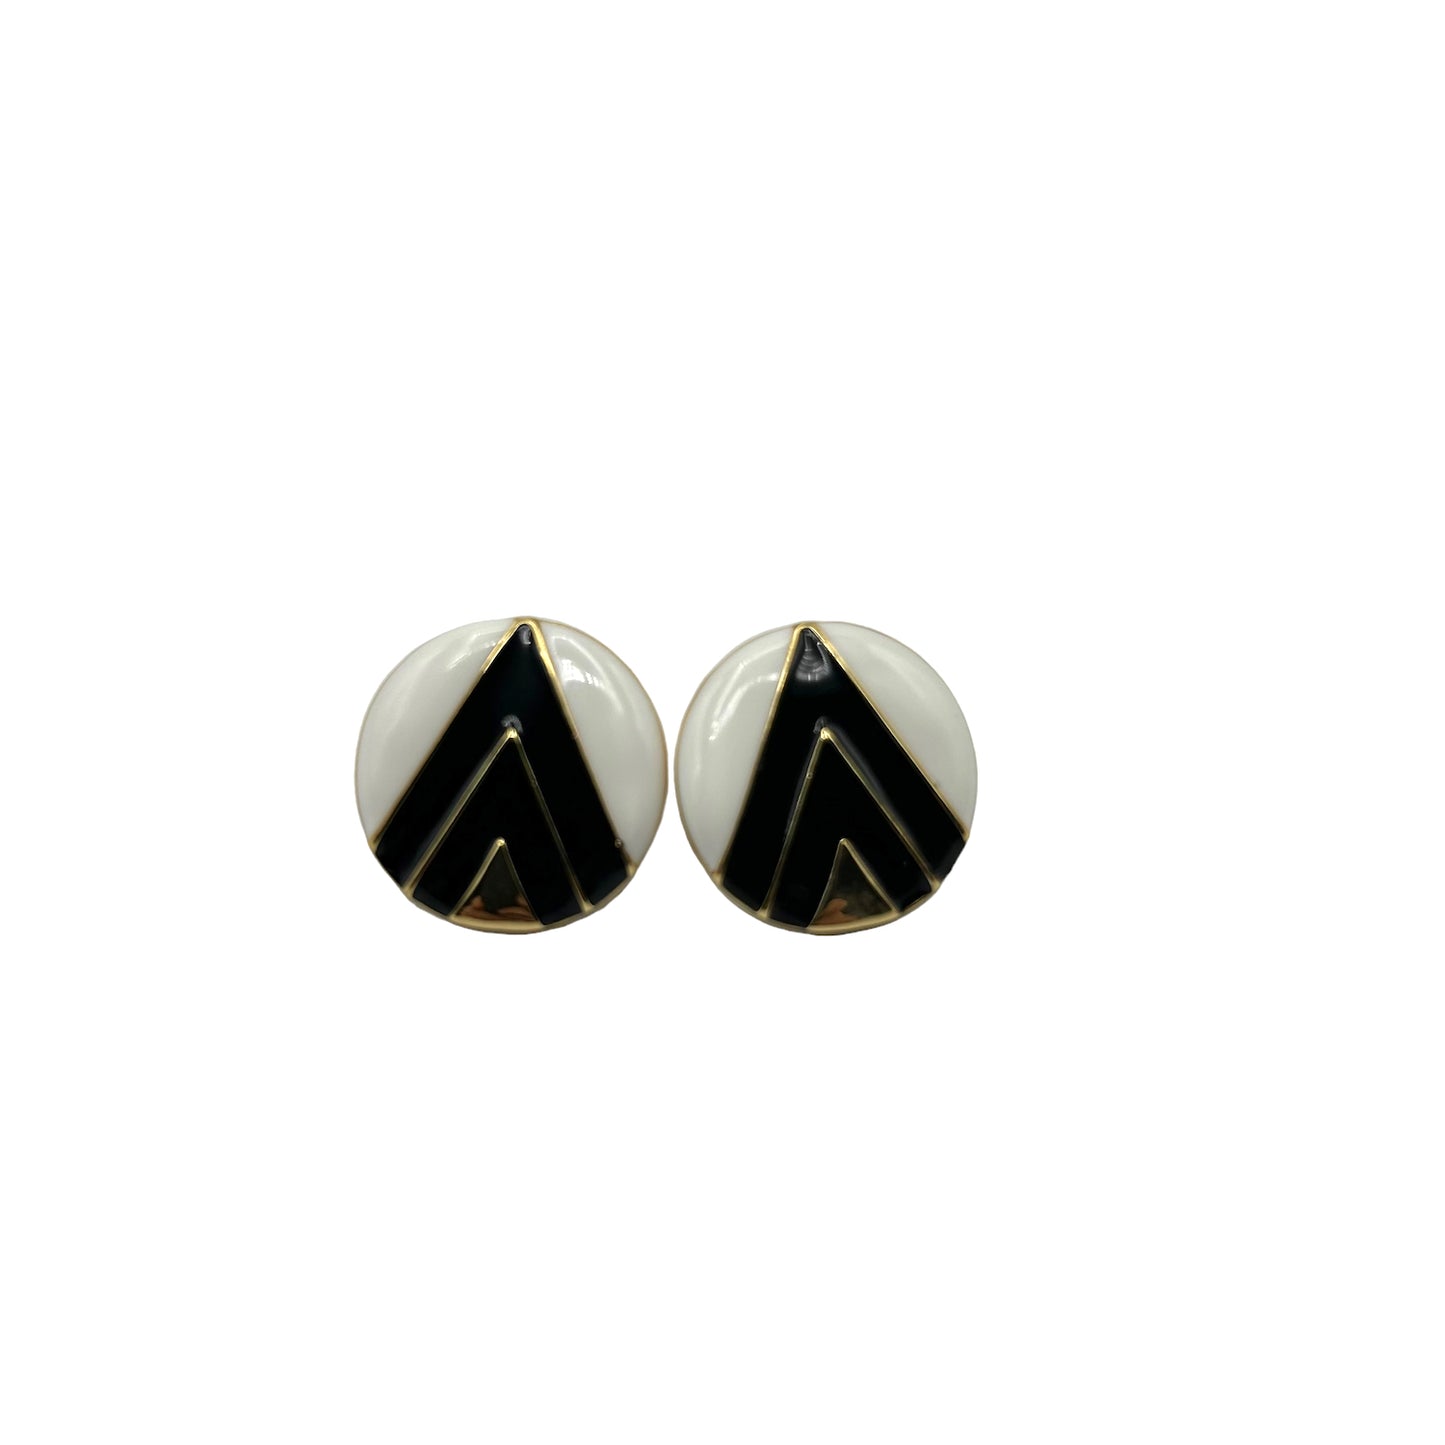 Retro monochrome earrings